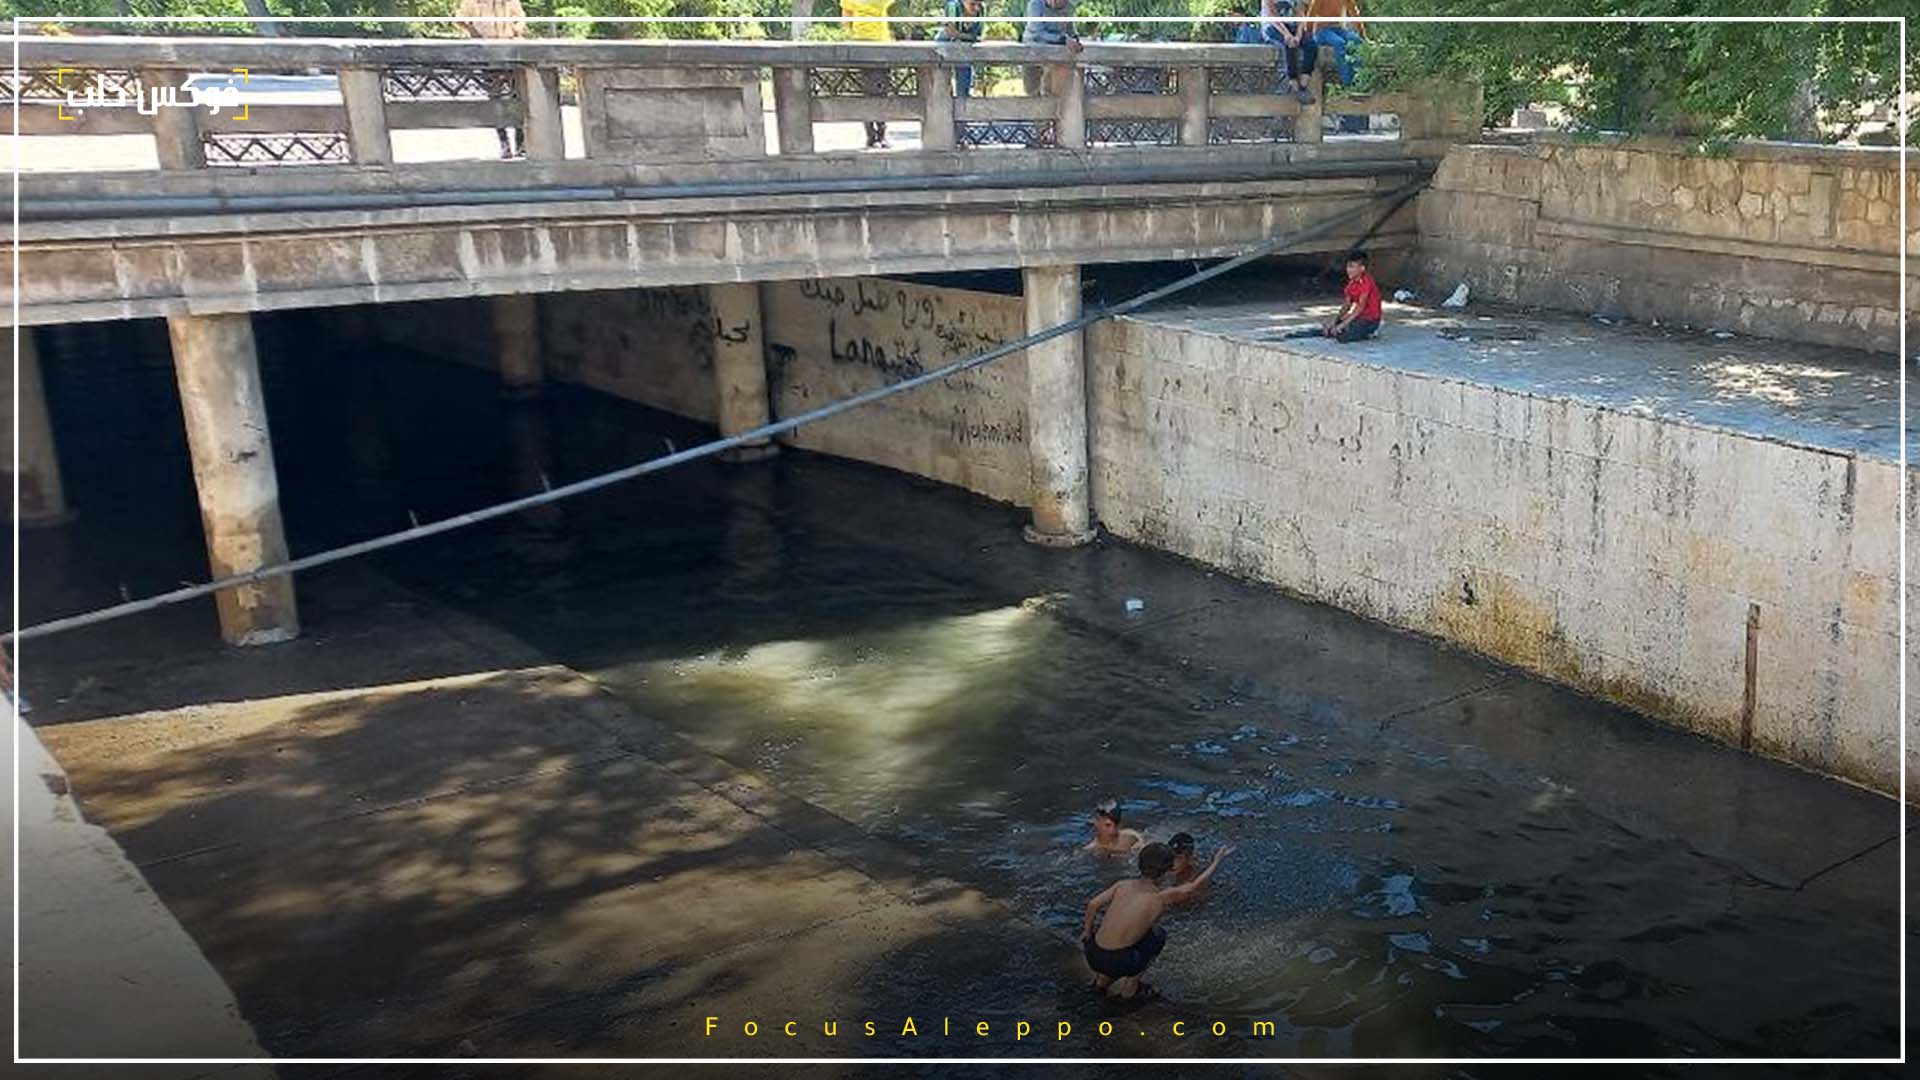 الصورة لأطفال يسبحون في مجرى نهر قويق بحلب.